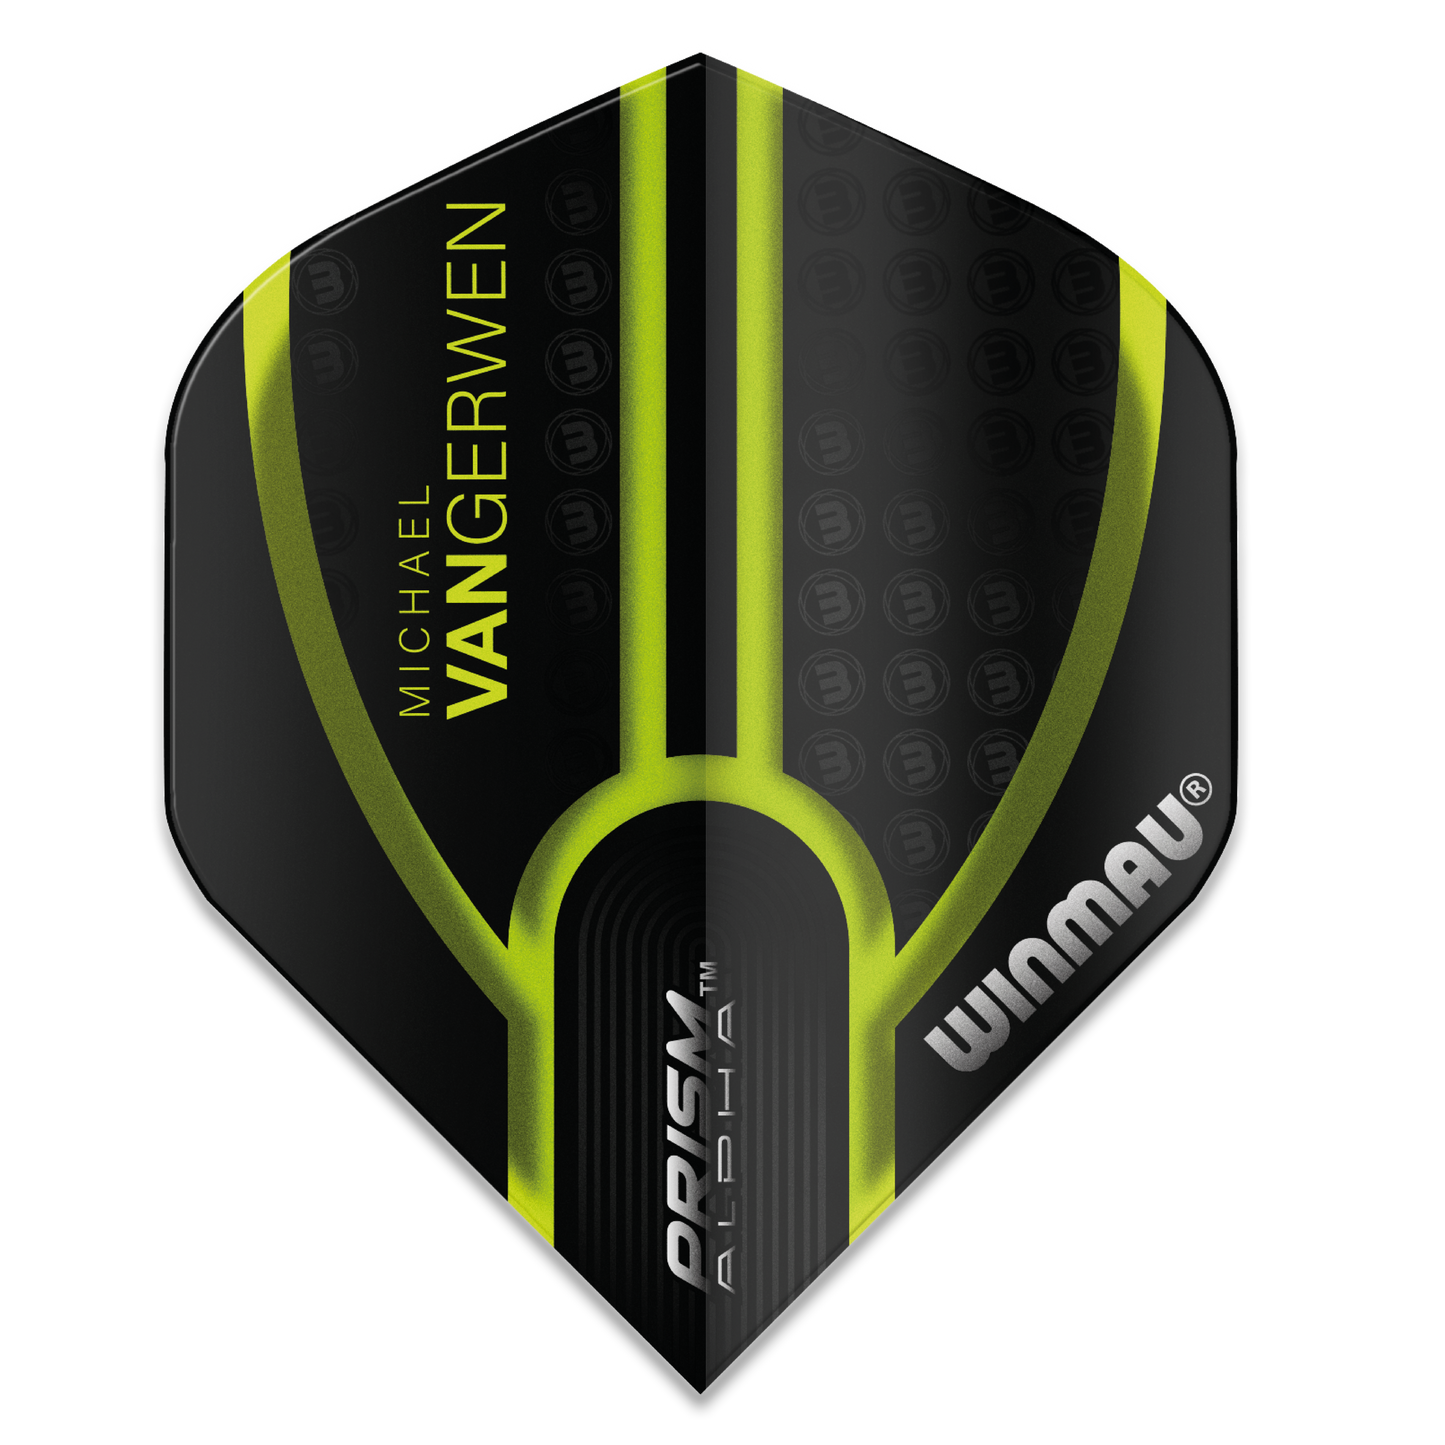 Winmau MVG Prism Alpha Darts Flights - Black and Green Michael Van Gerwen